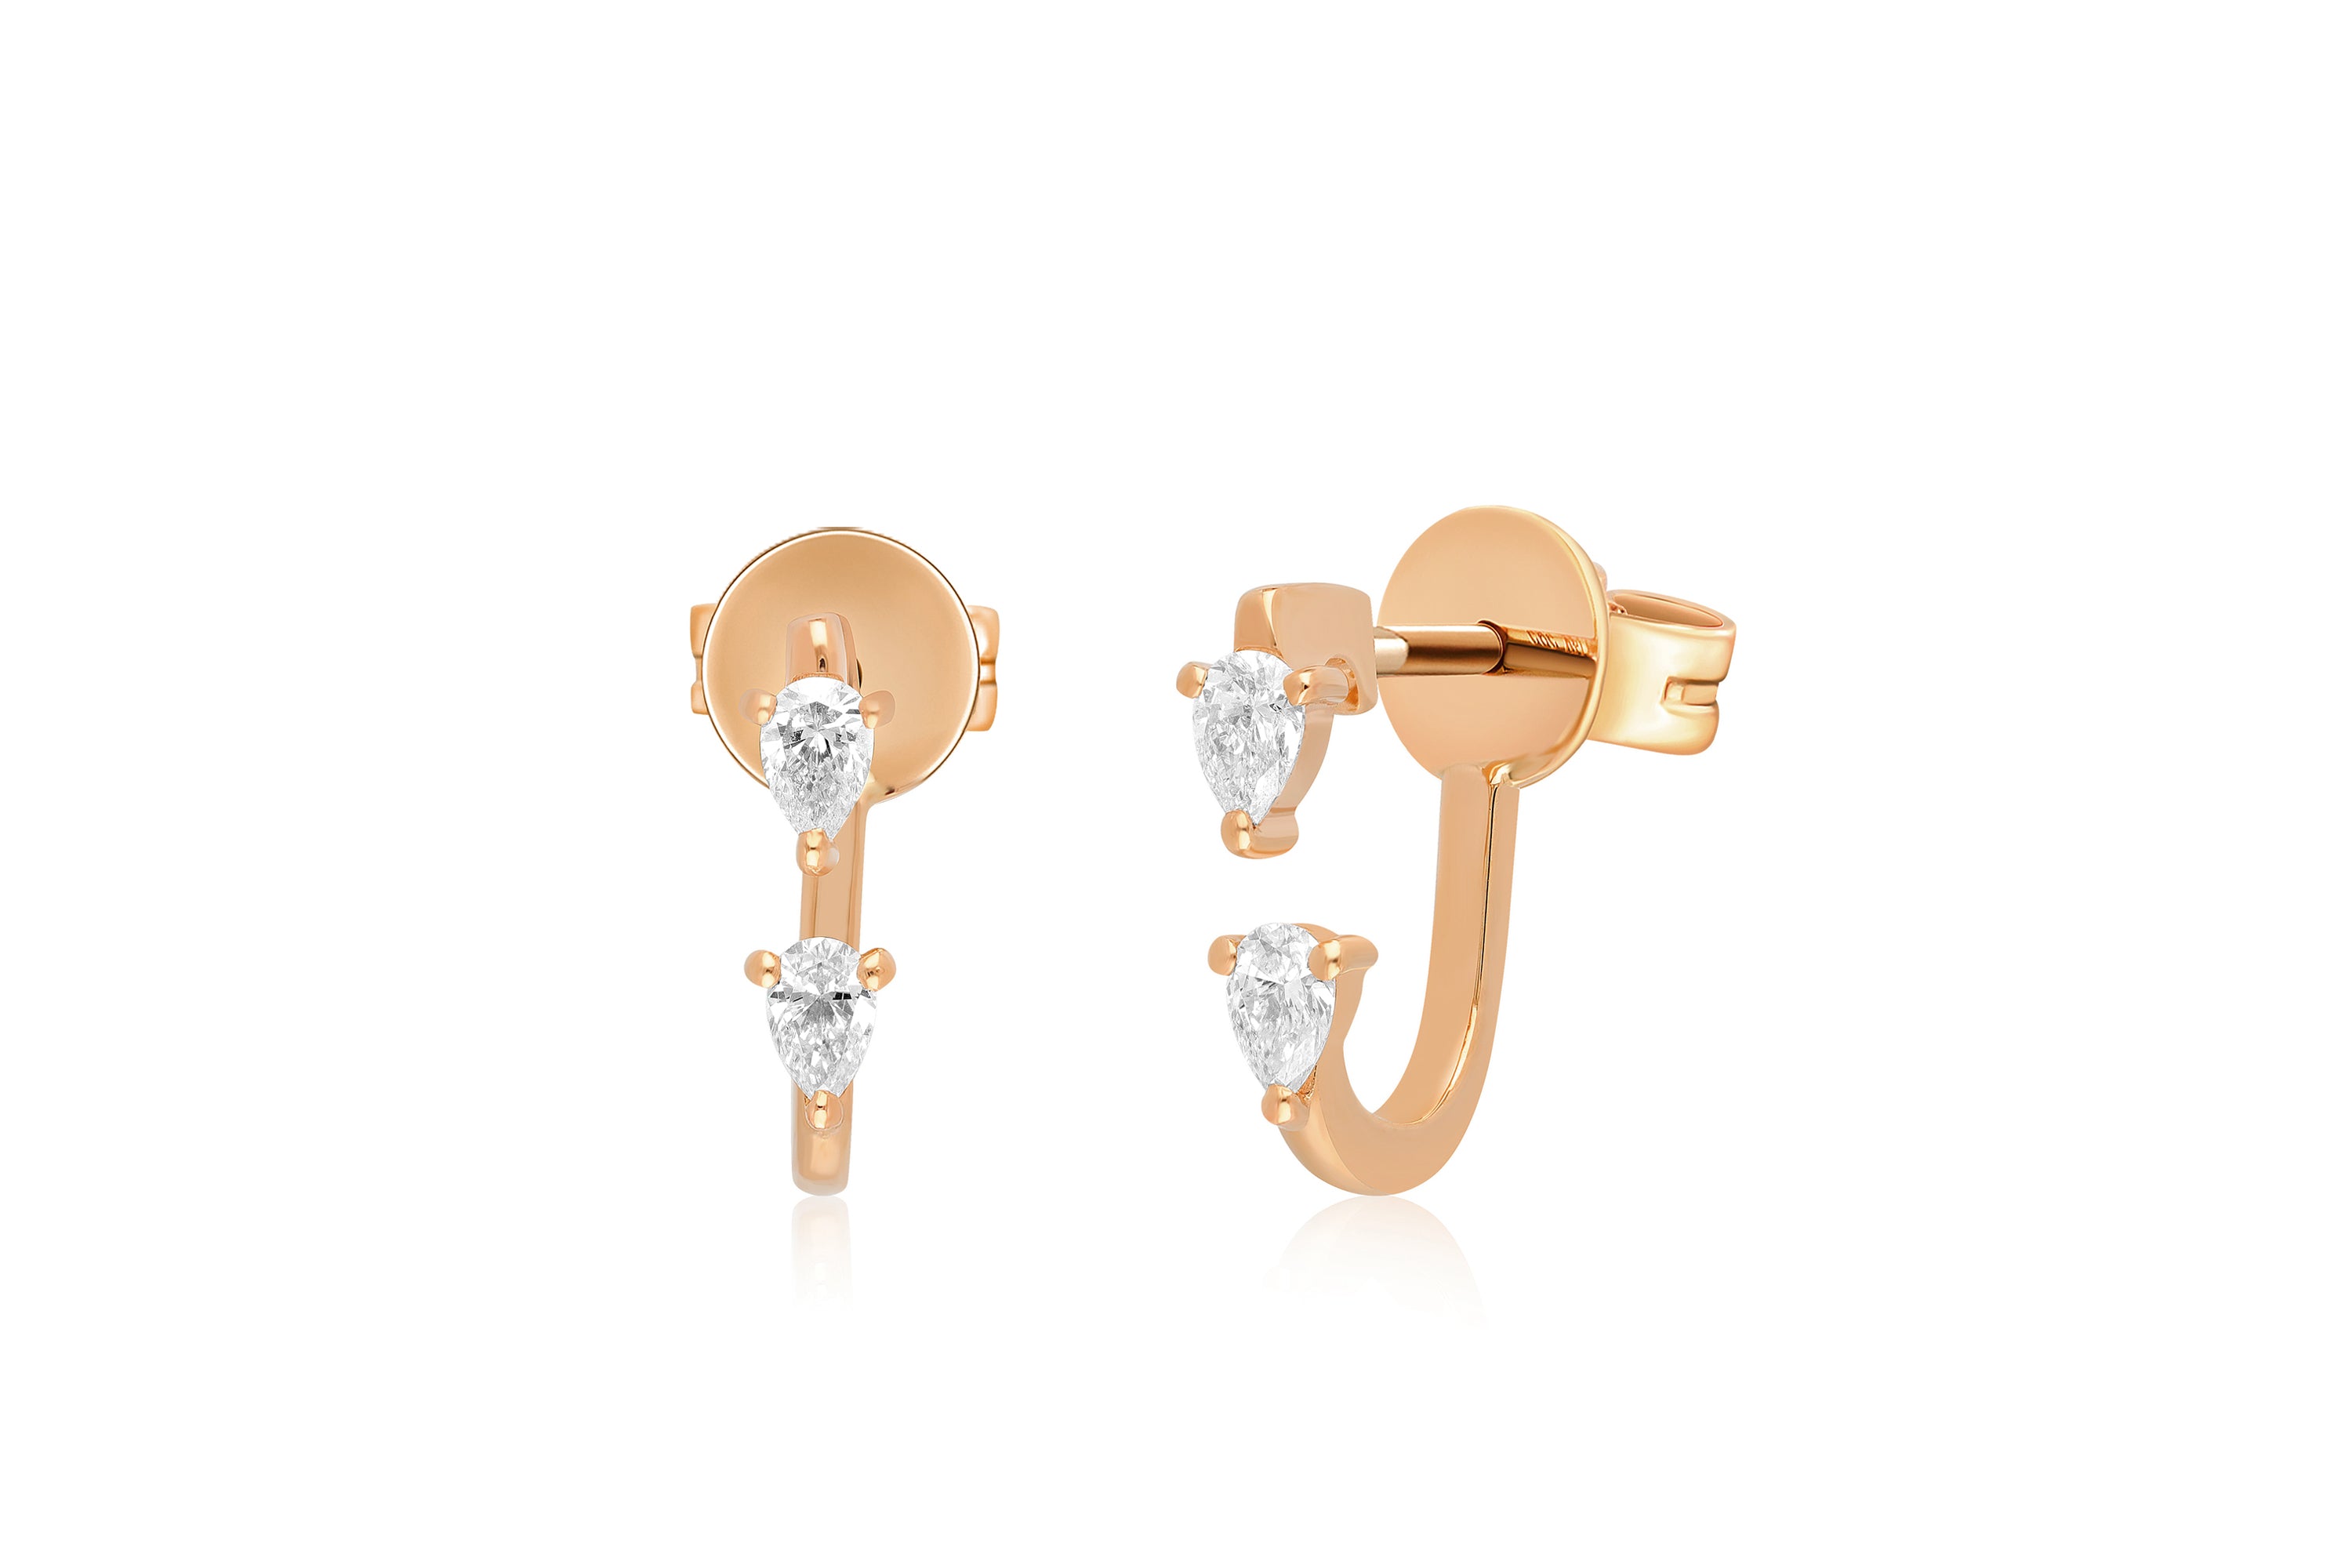 Double Pear Diamond Earring in 14k Rose Gold